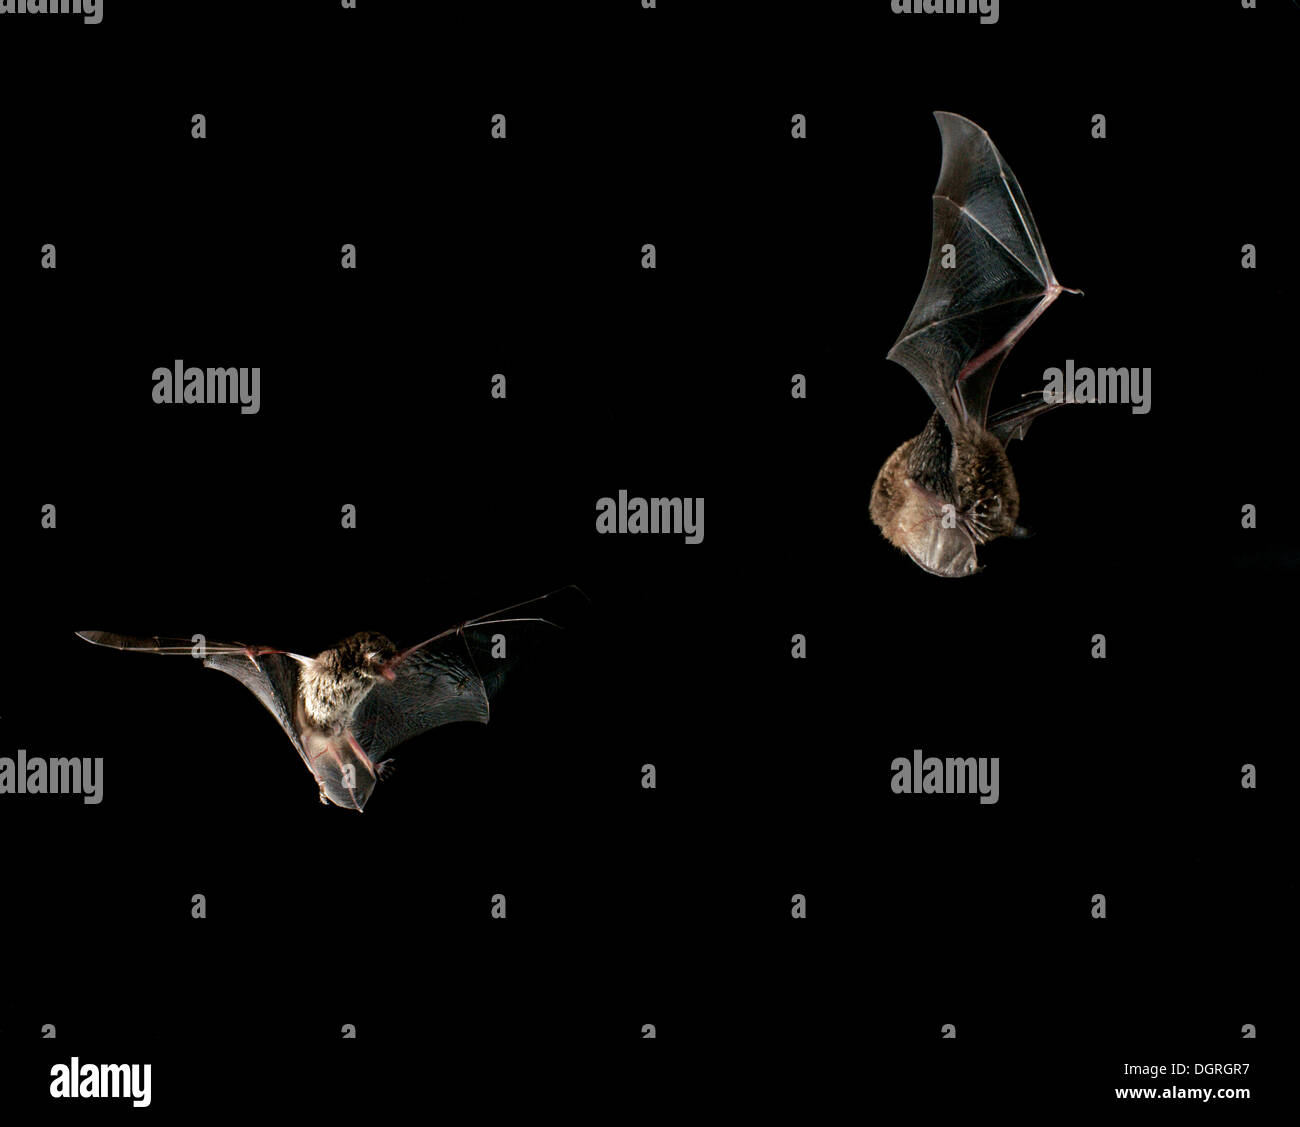 Daubenton's bat (Myotis daubentonii) Stock Photo